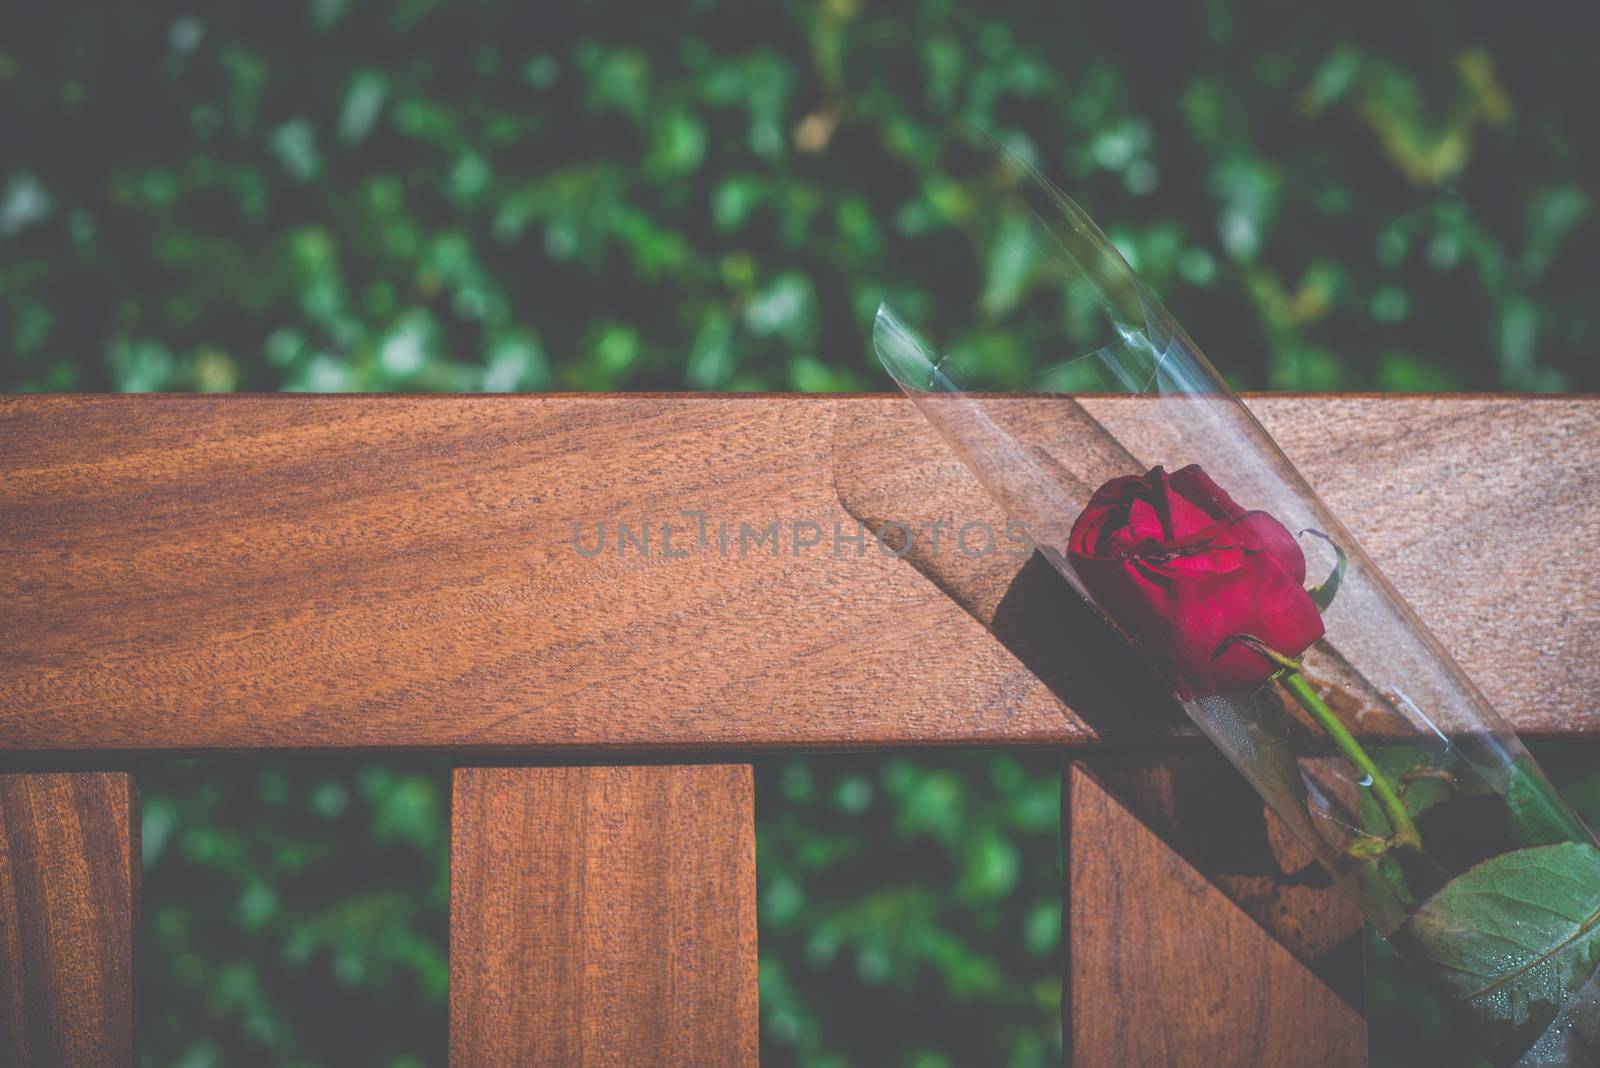 Single Bereavement Rose by mrdoomits